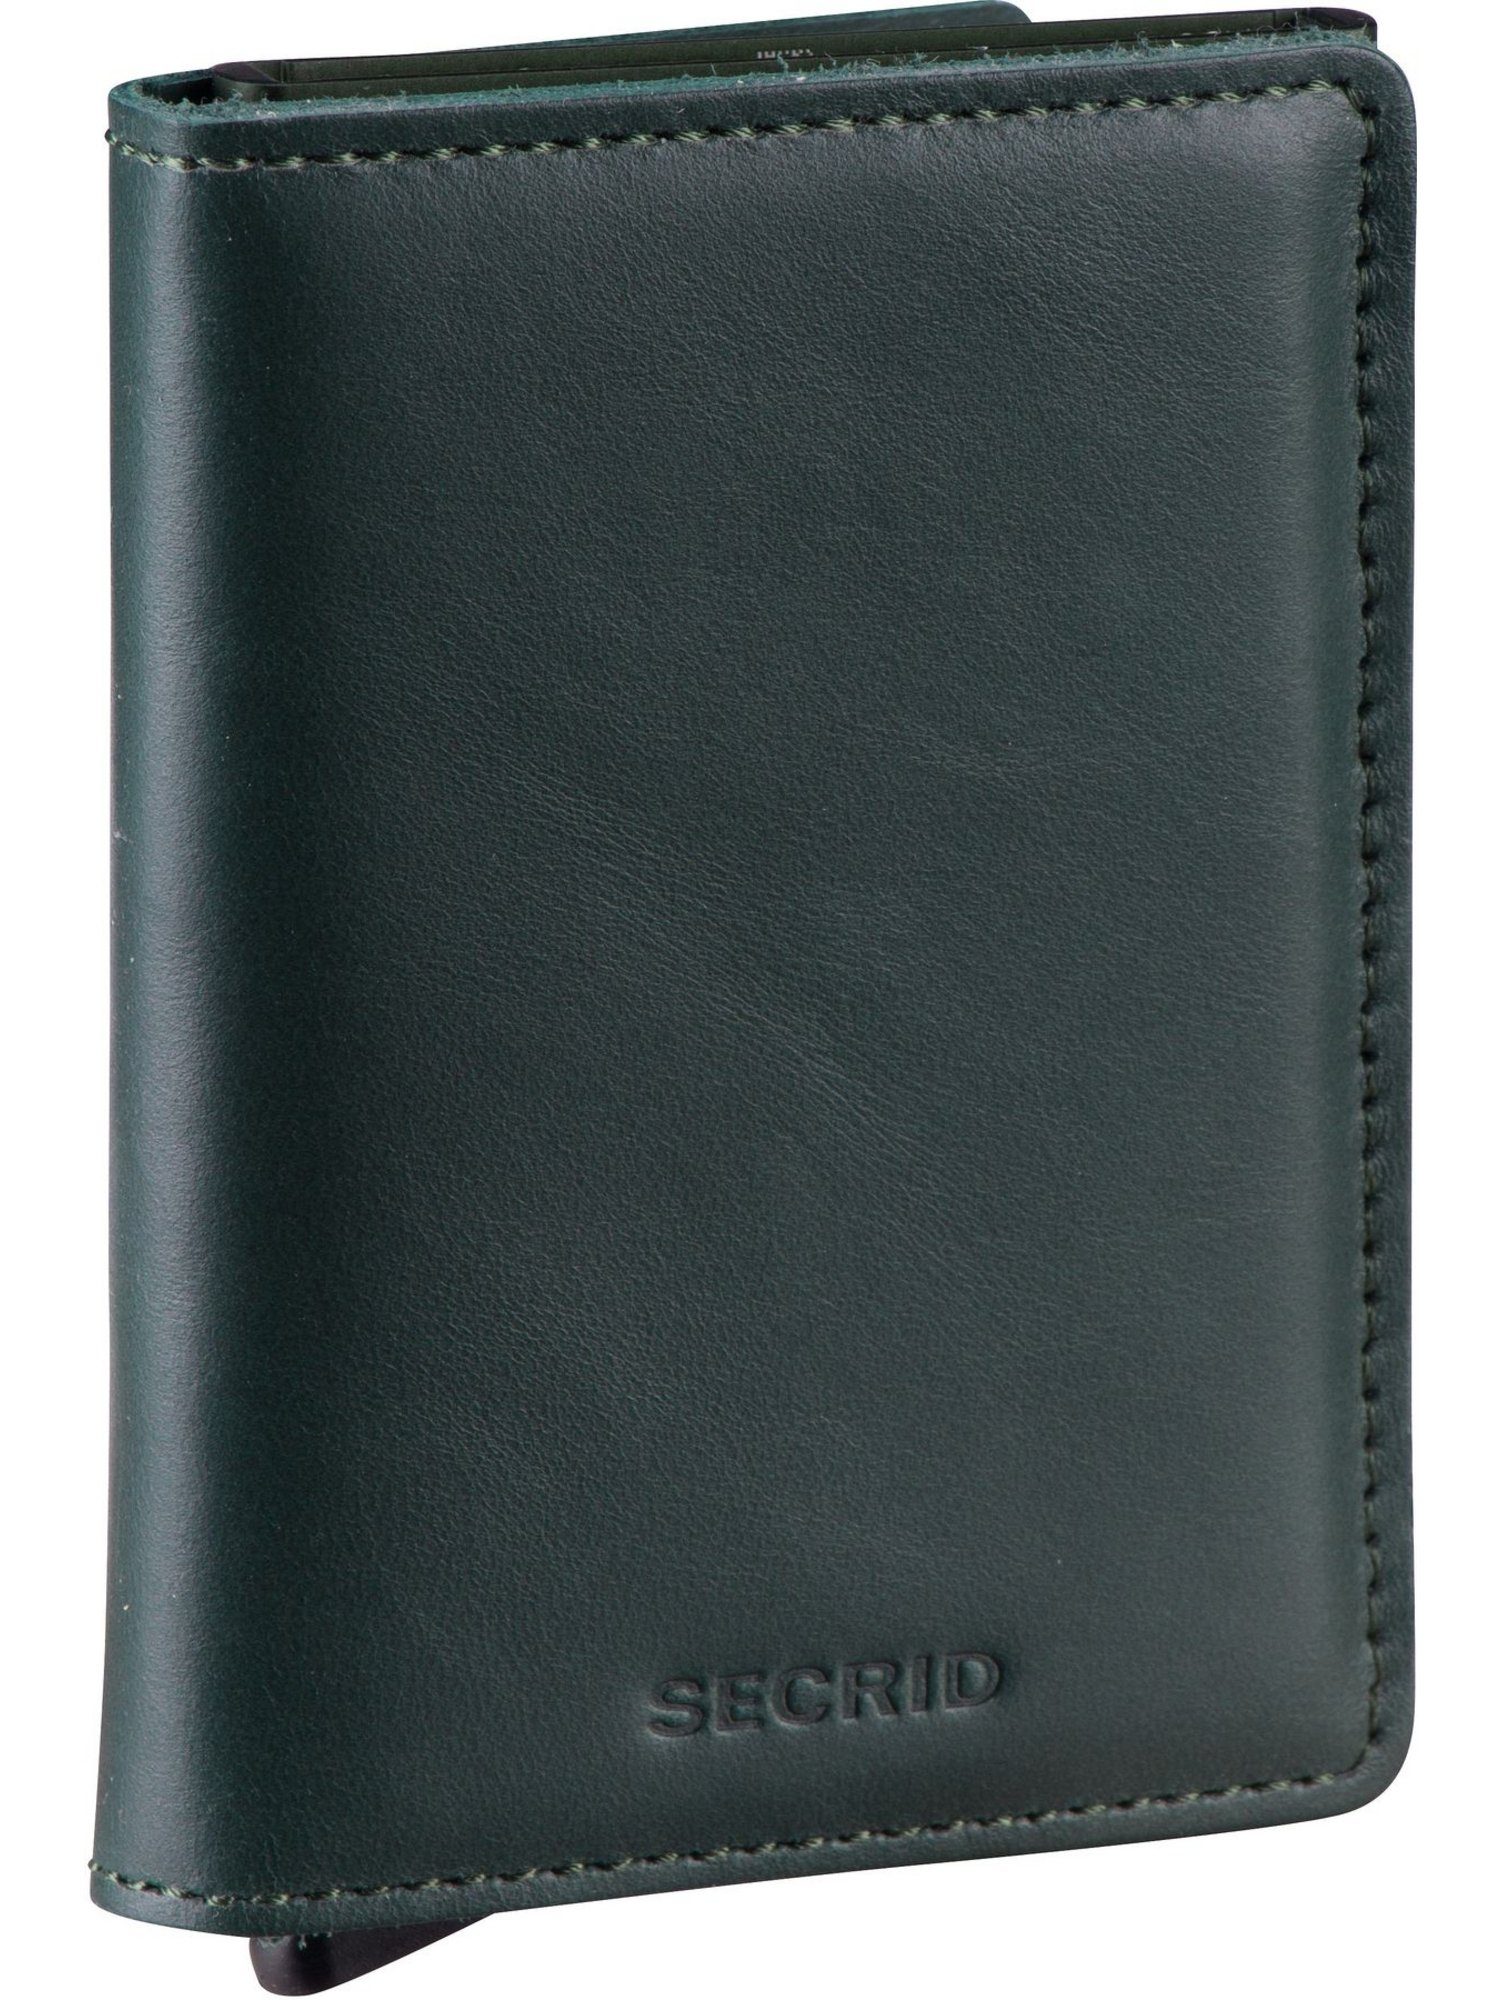 Original SECRID Slimwallet Brieftasche Green